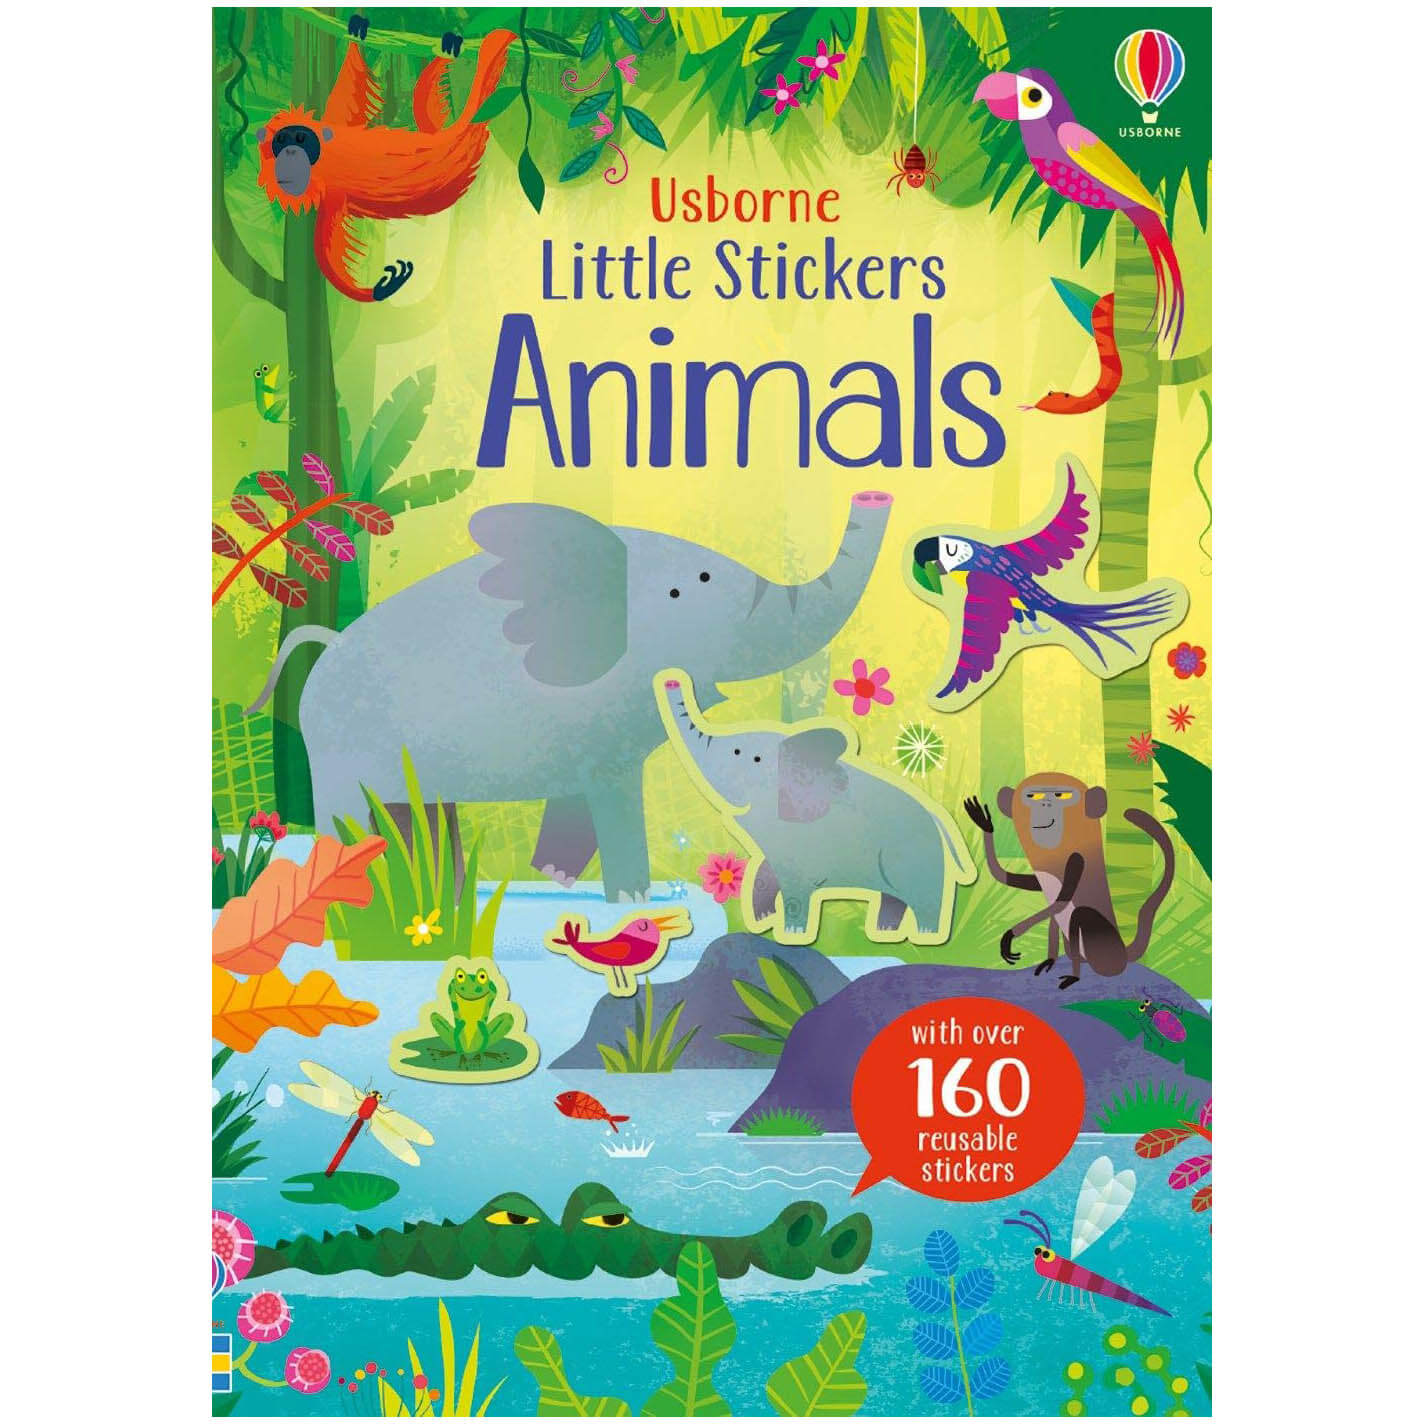 Usborne Little Stickers Animals (Little Stickers Books)